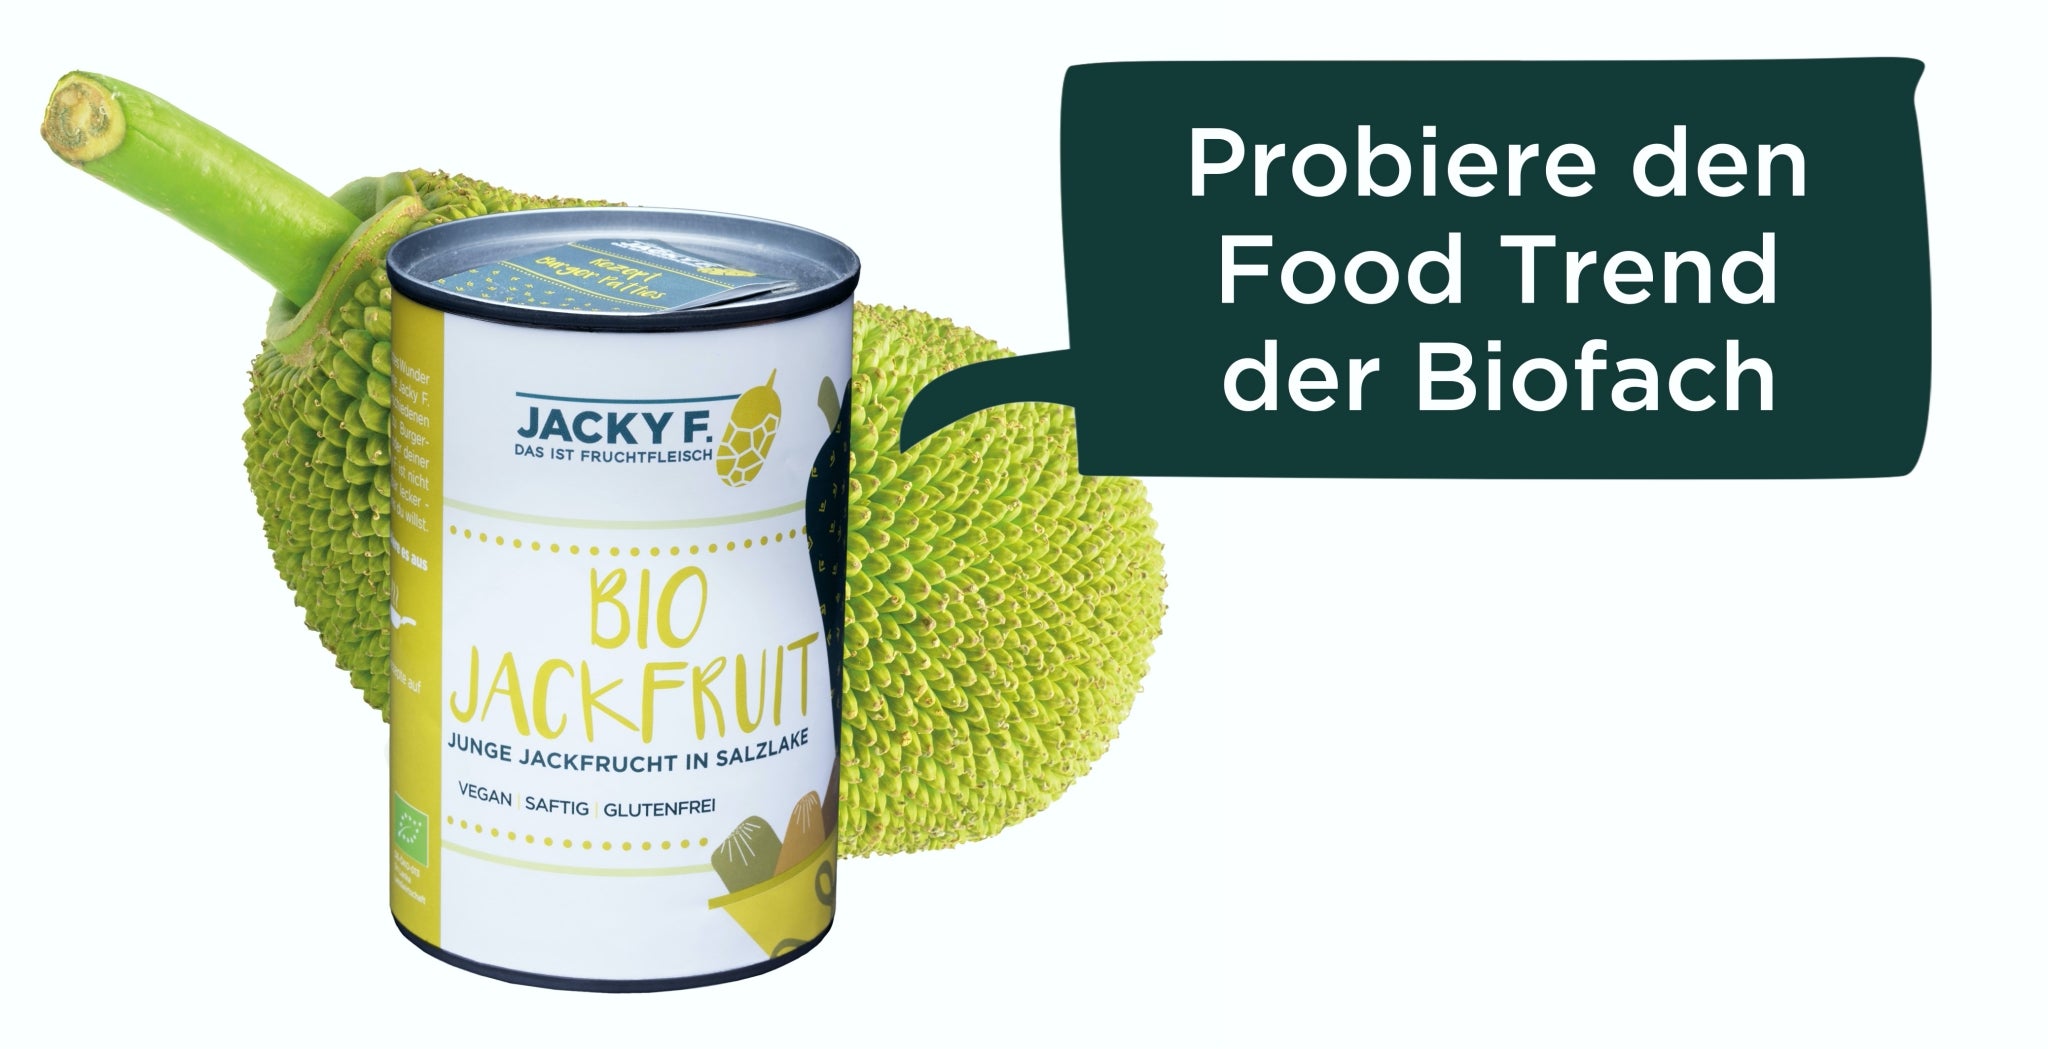 Probiere den Food Trend der Biofach 2020 | JACKY F. Bio-Jackfruit